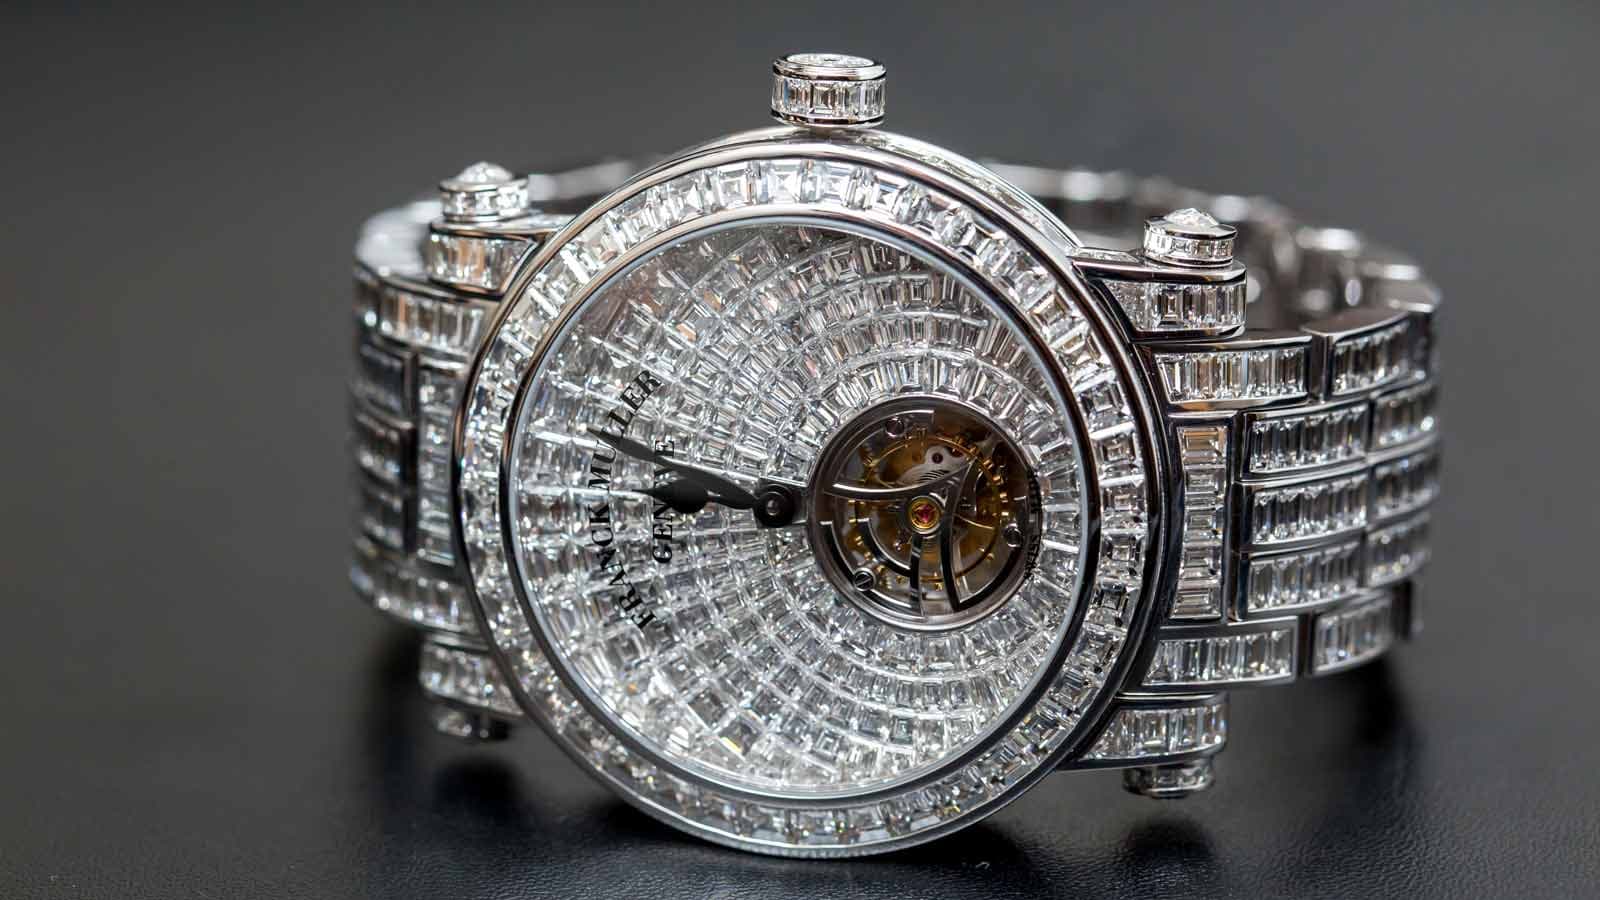 Tinh hoa nghệ thuật chế tác đồng hồ & kim hoàn đỉnh cao trong siêu phẩm Franck Muller trị giá 30 tỷ đồng lần đầu tiên đến Việt Nam